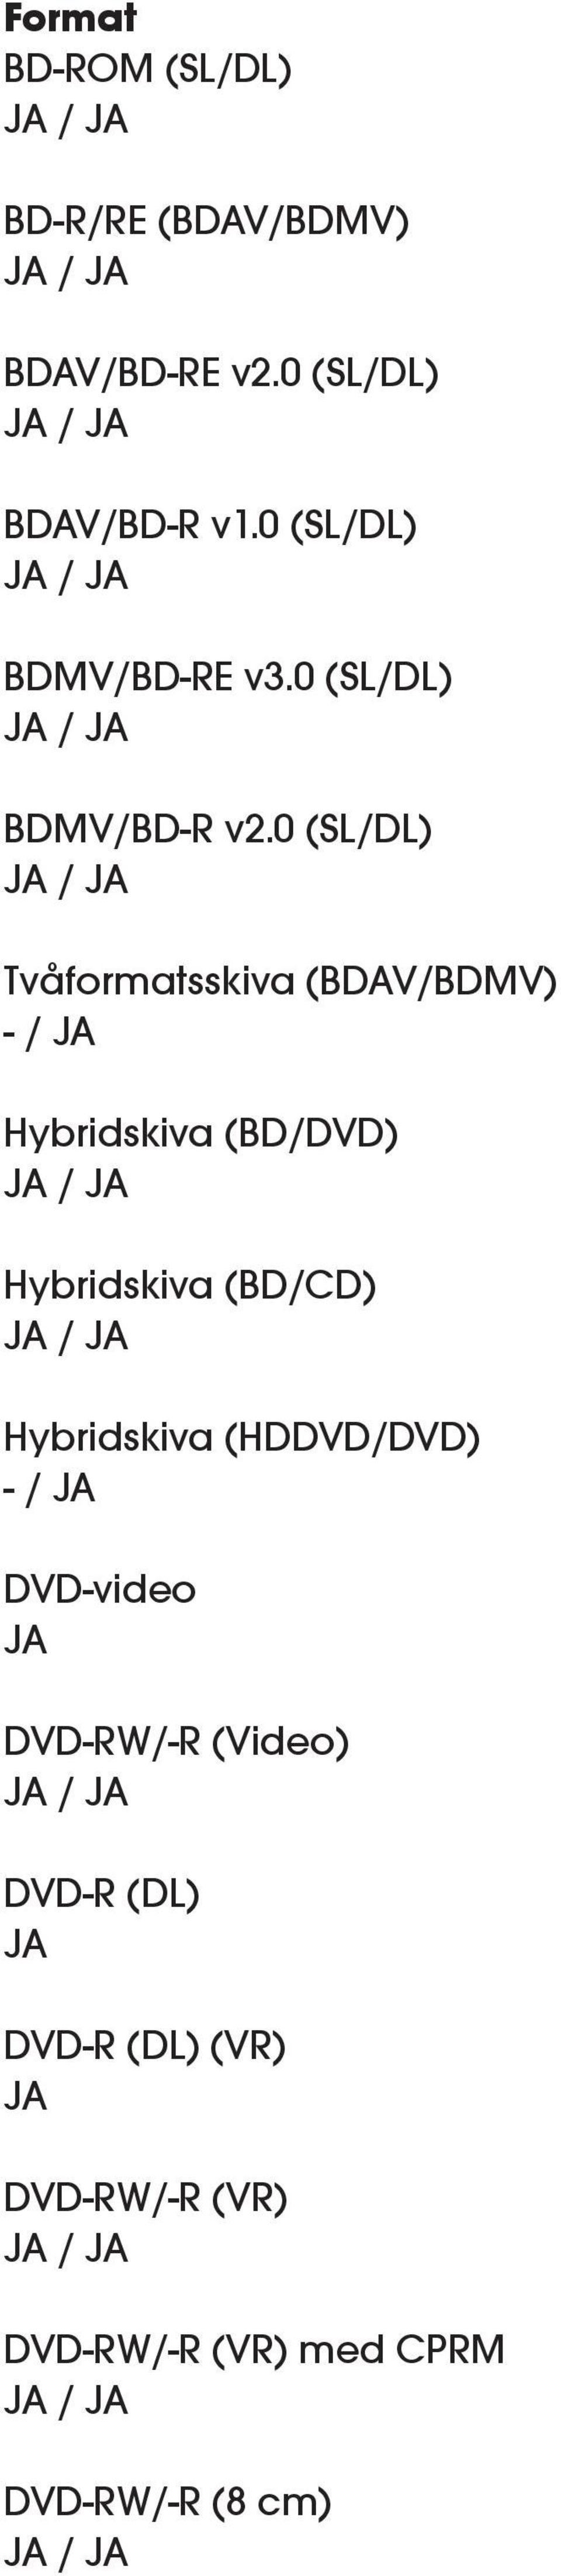 0 (SL/DL) / Tvåformatsskiva (BDAV/BDMV) - / Hybridskiva (BD/DVD) / Hybridskiva (BD/CD) /